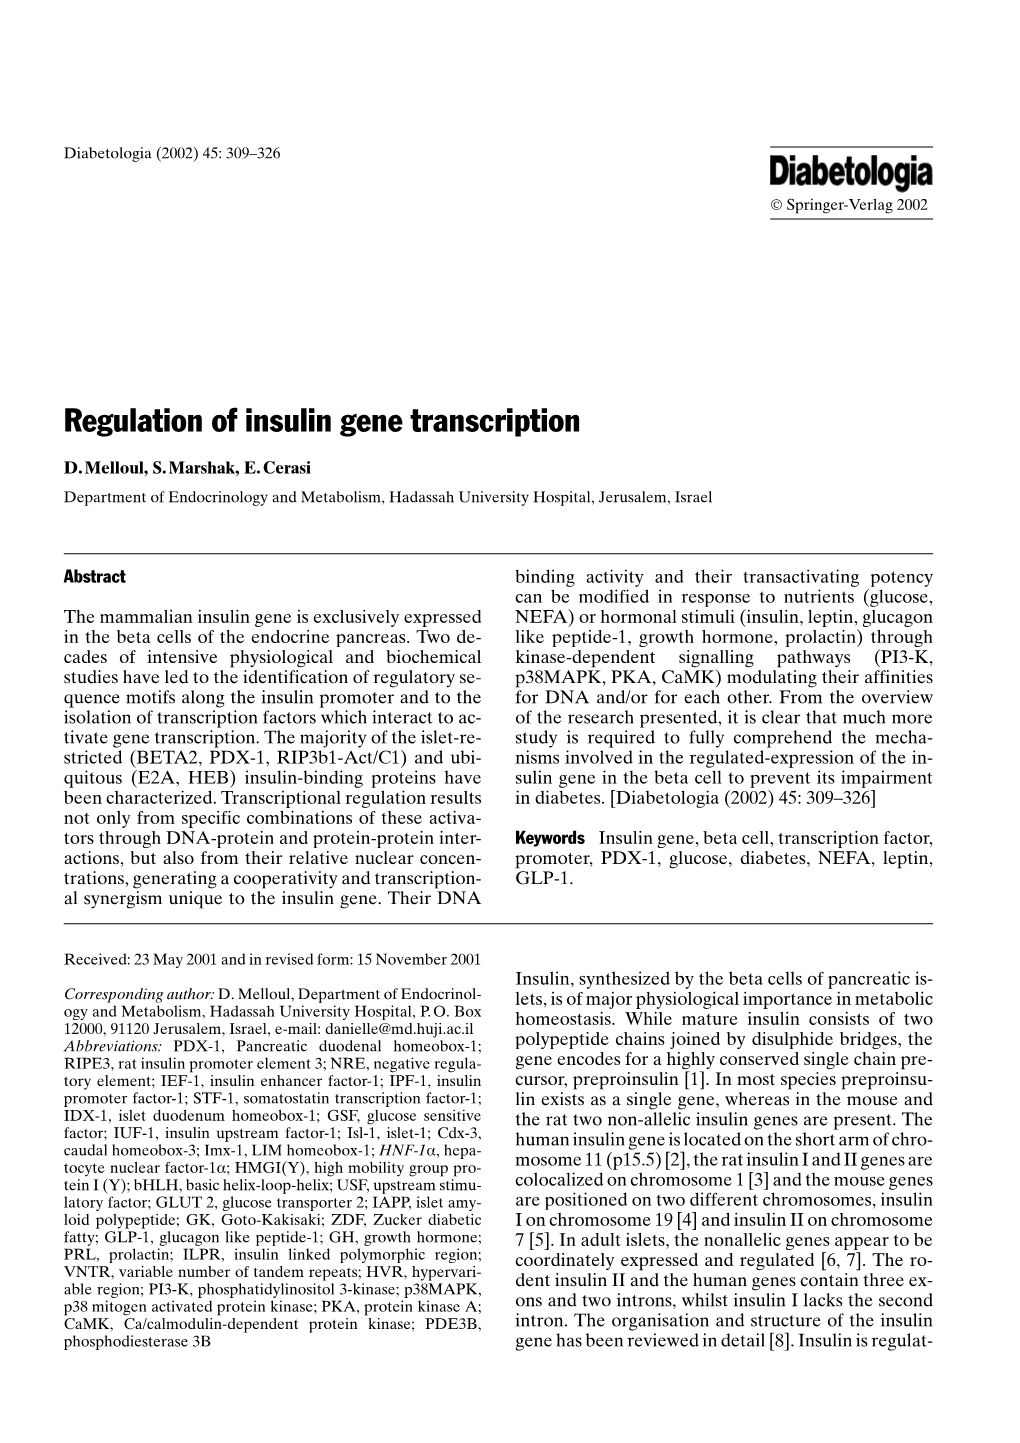 Regulation of Insulin Gene Transcription